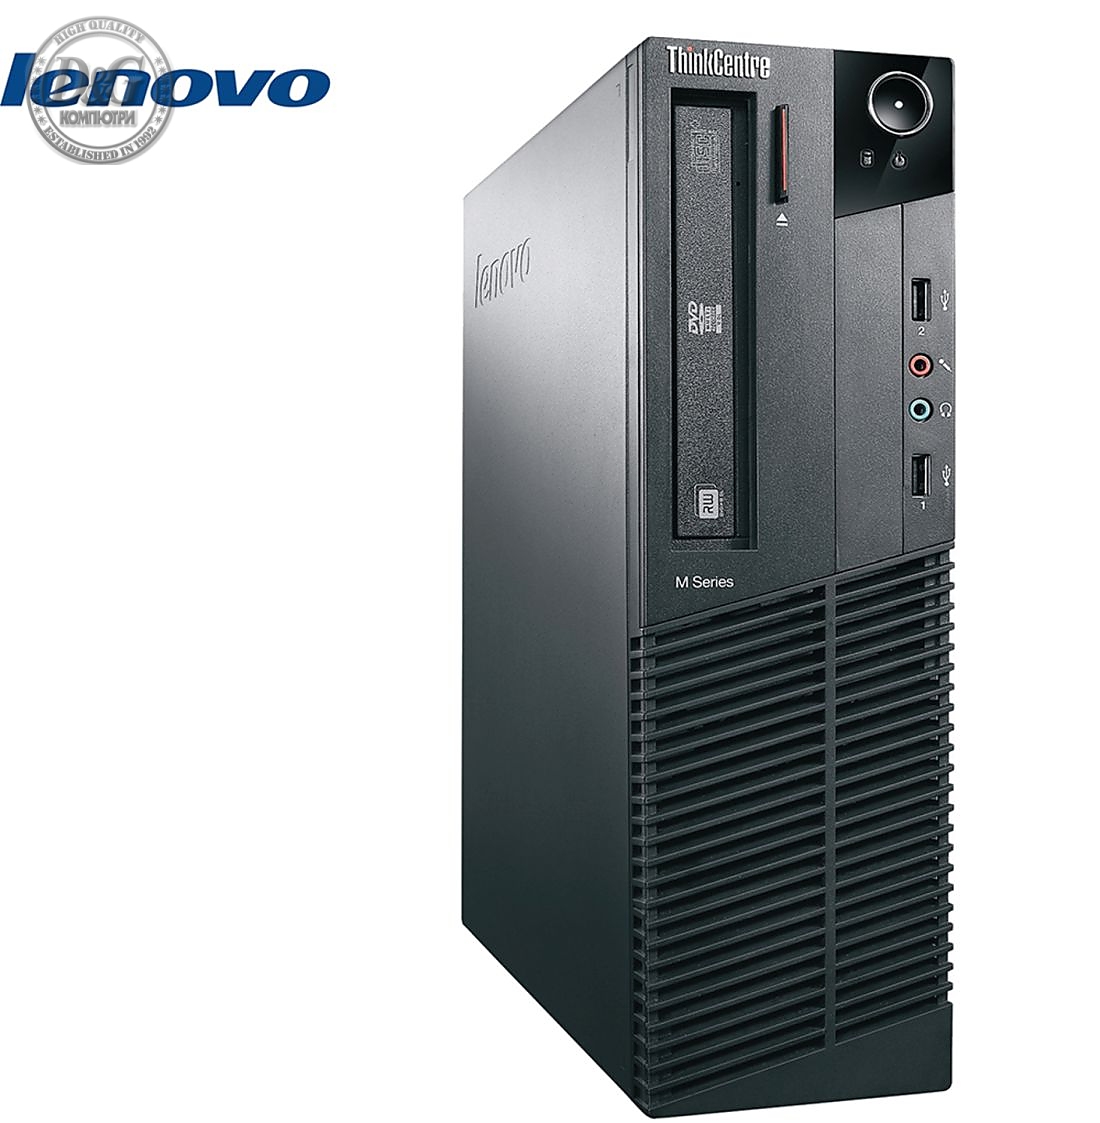 Lenovo ThinkCentre M91p i5-2400/8GB/500GB/DVD-RW/WIN10